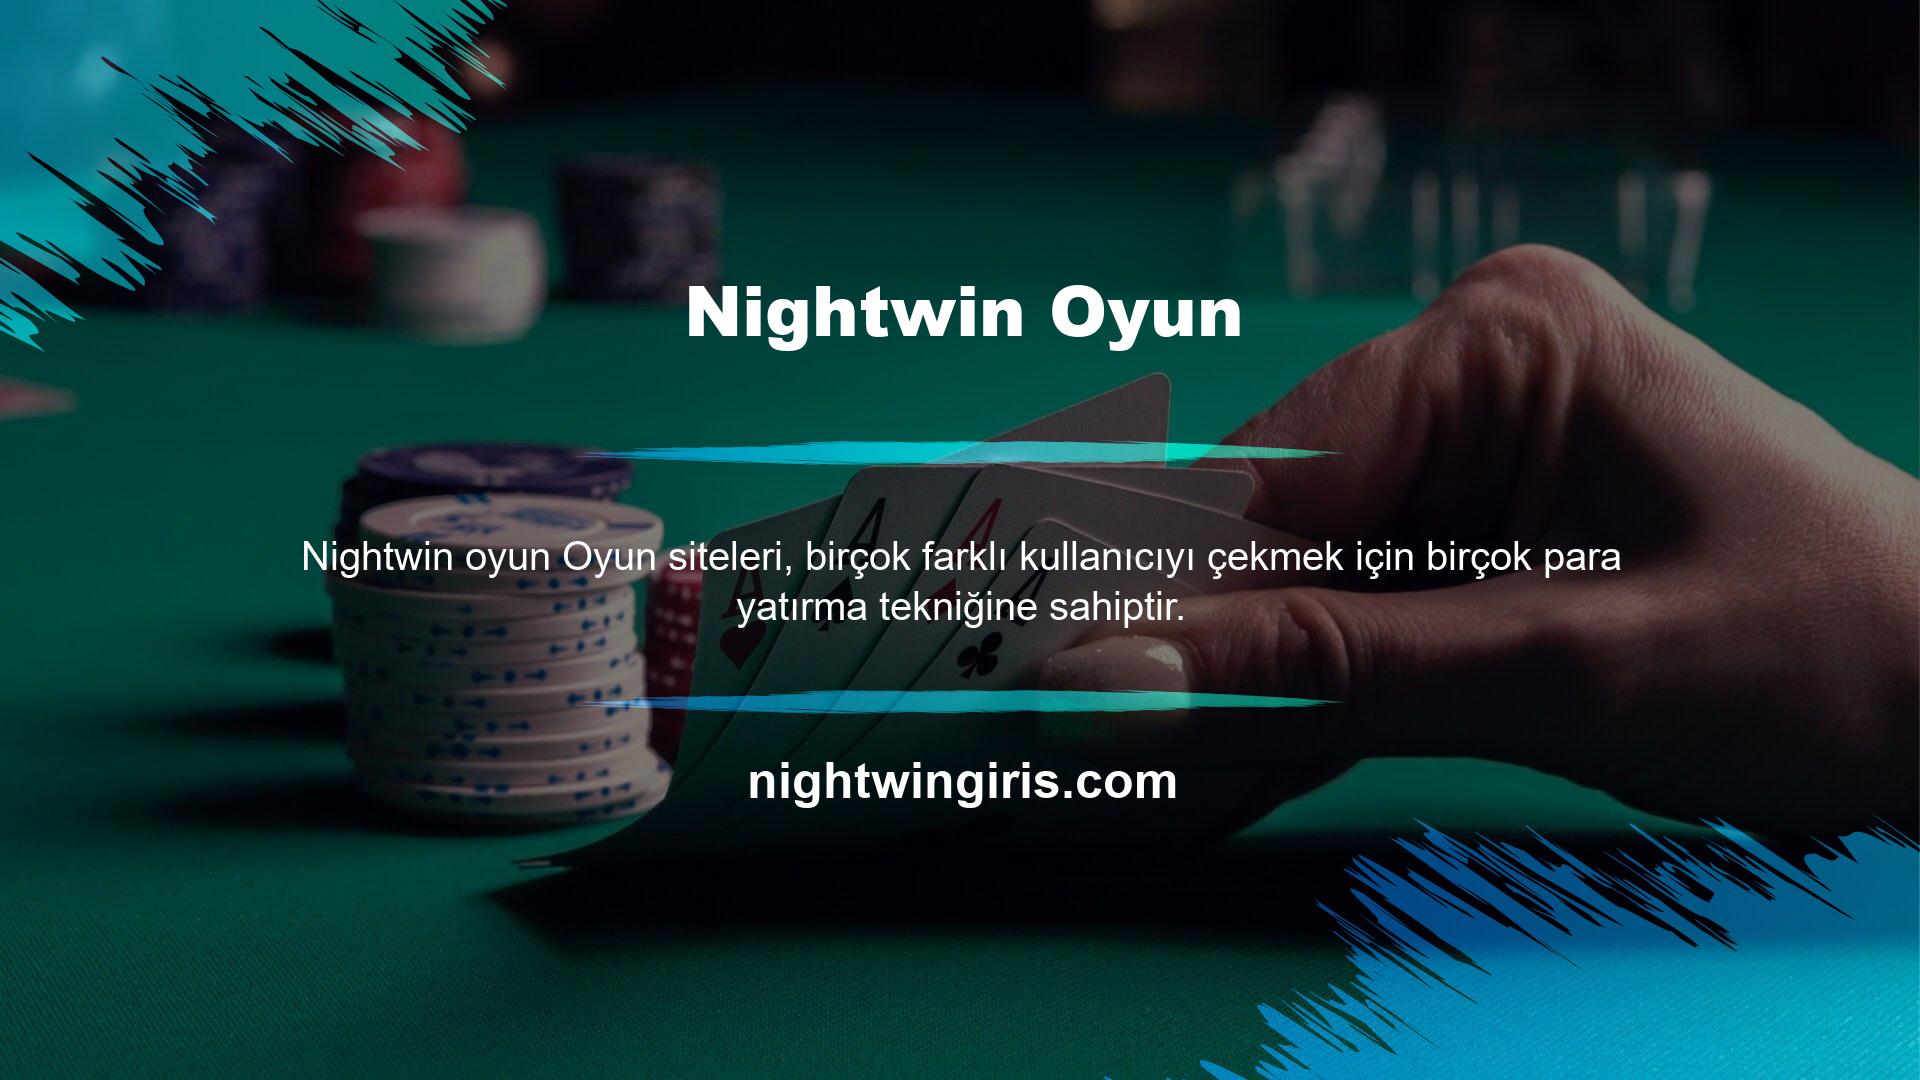 Nightwin para yatırma teknolojisi, üyelerin istek ve görüşlerine göre sürekli olarak desteklenebilmektedir